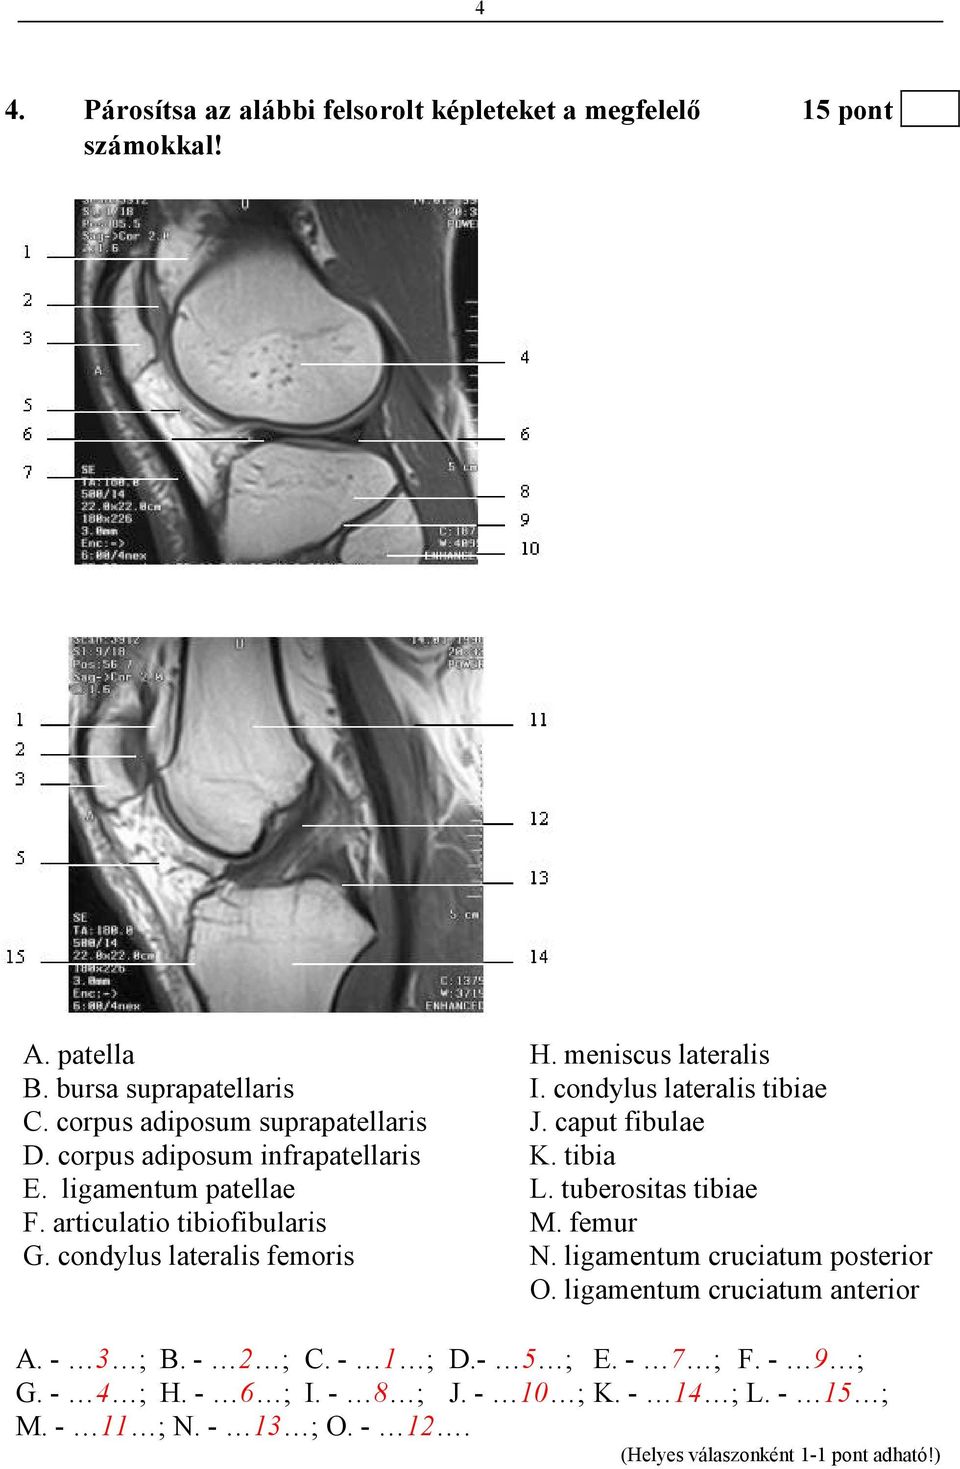 ligamentum patellae L. tuberositas tibiae F. articulatio tibiofibularis M. femur G. condylus lateralis femoris N.